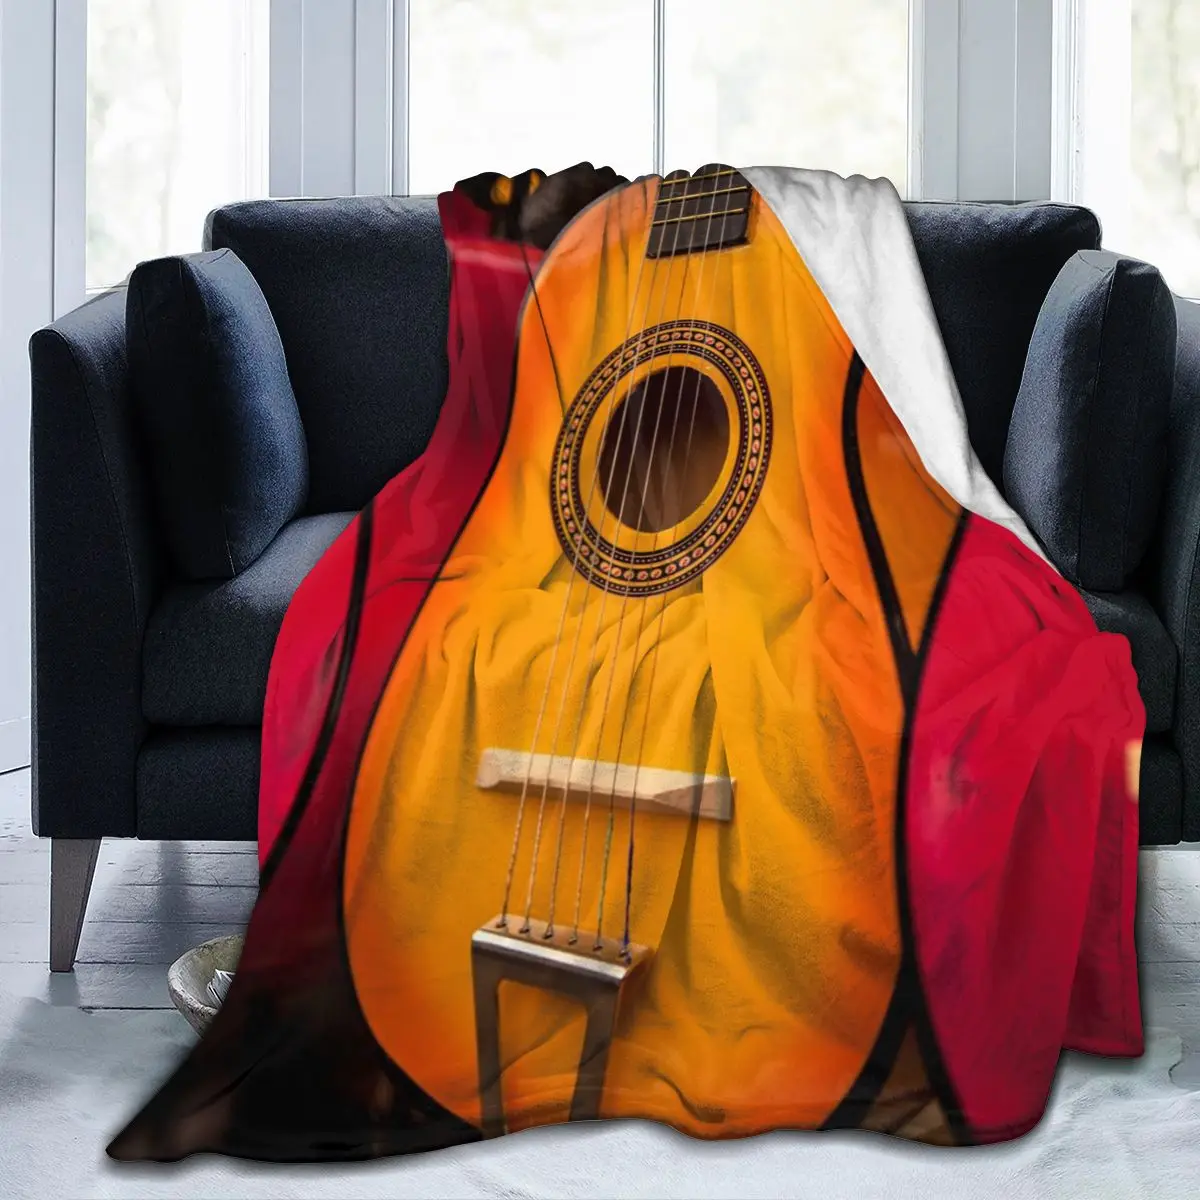 

Фланелевое Одеяло с индивидуальным принтом, мягкое покрывало с 3D гитарой, постельное белье, домашний текстиль, украшение